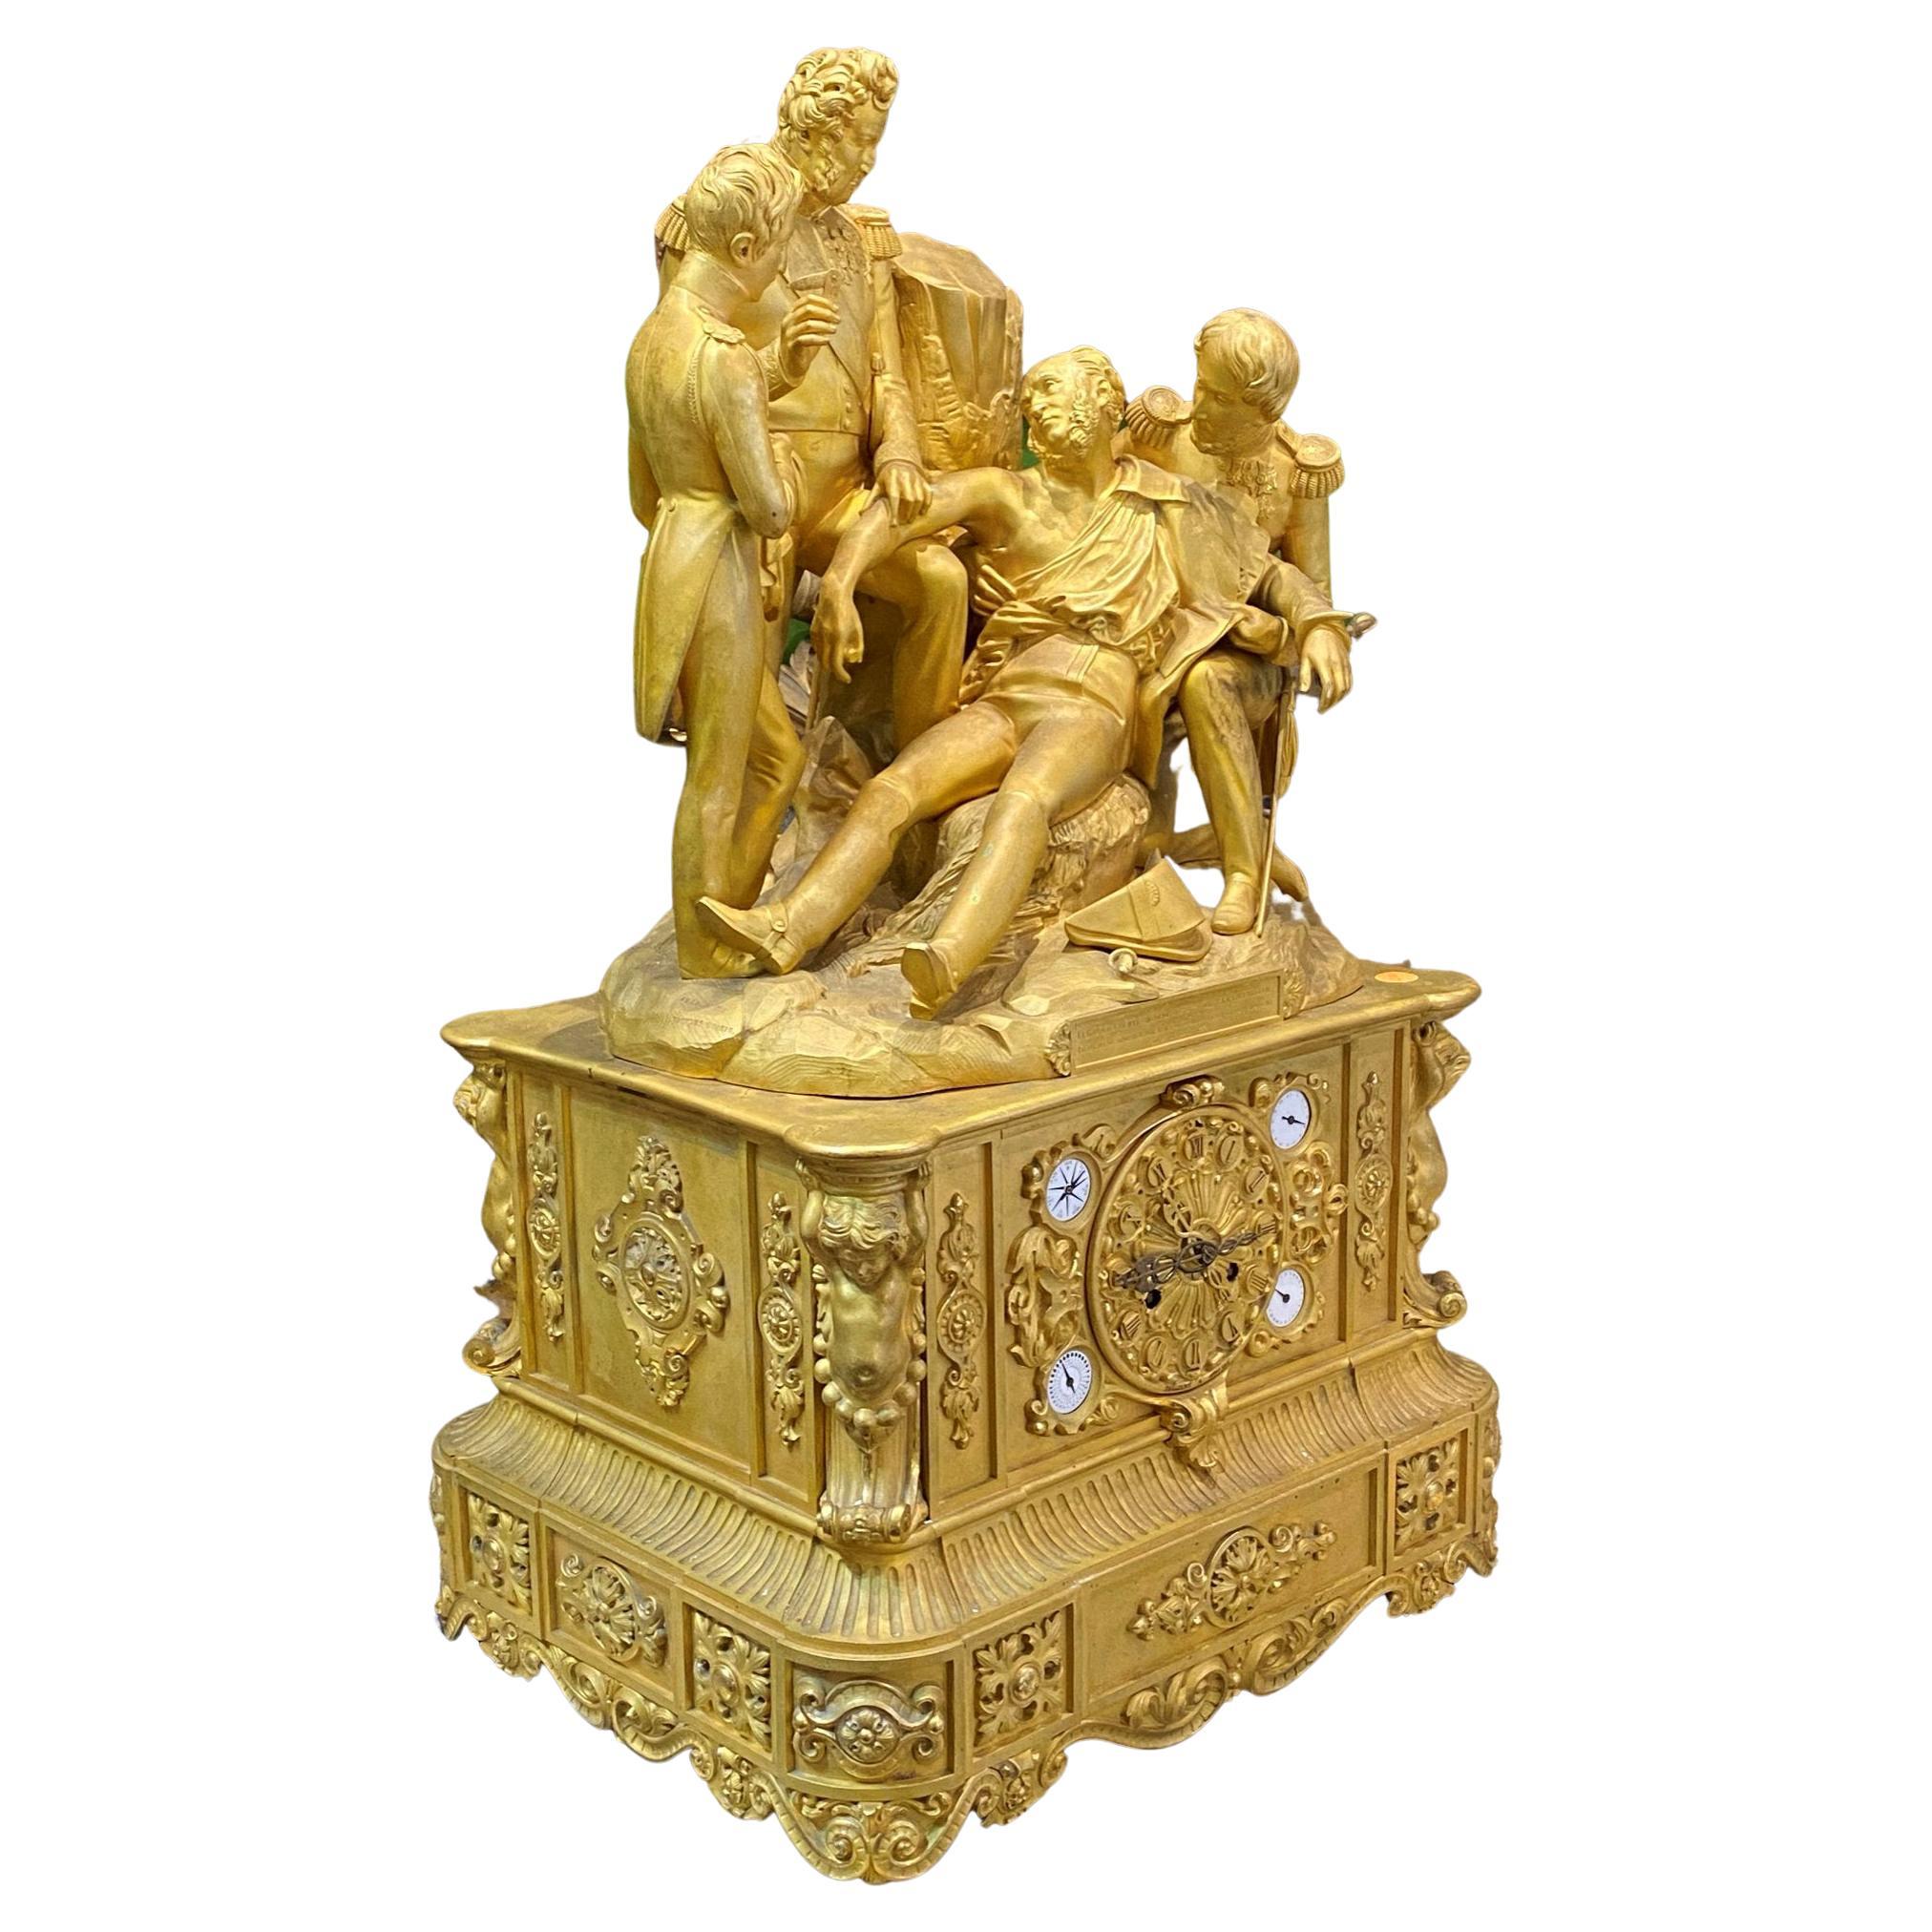 Historische Goldbronze-Kaminuhr von König Louis Philippe, um 1838